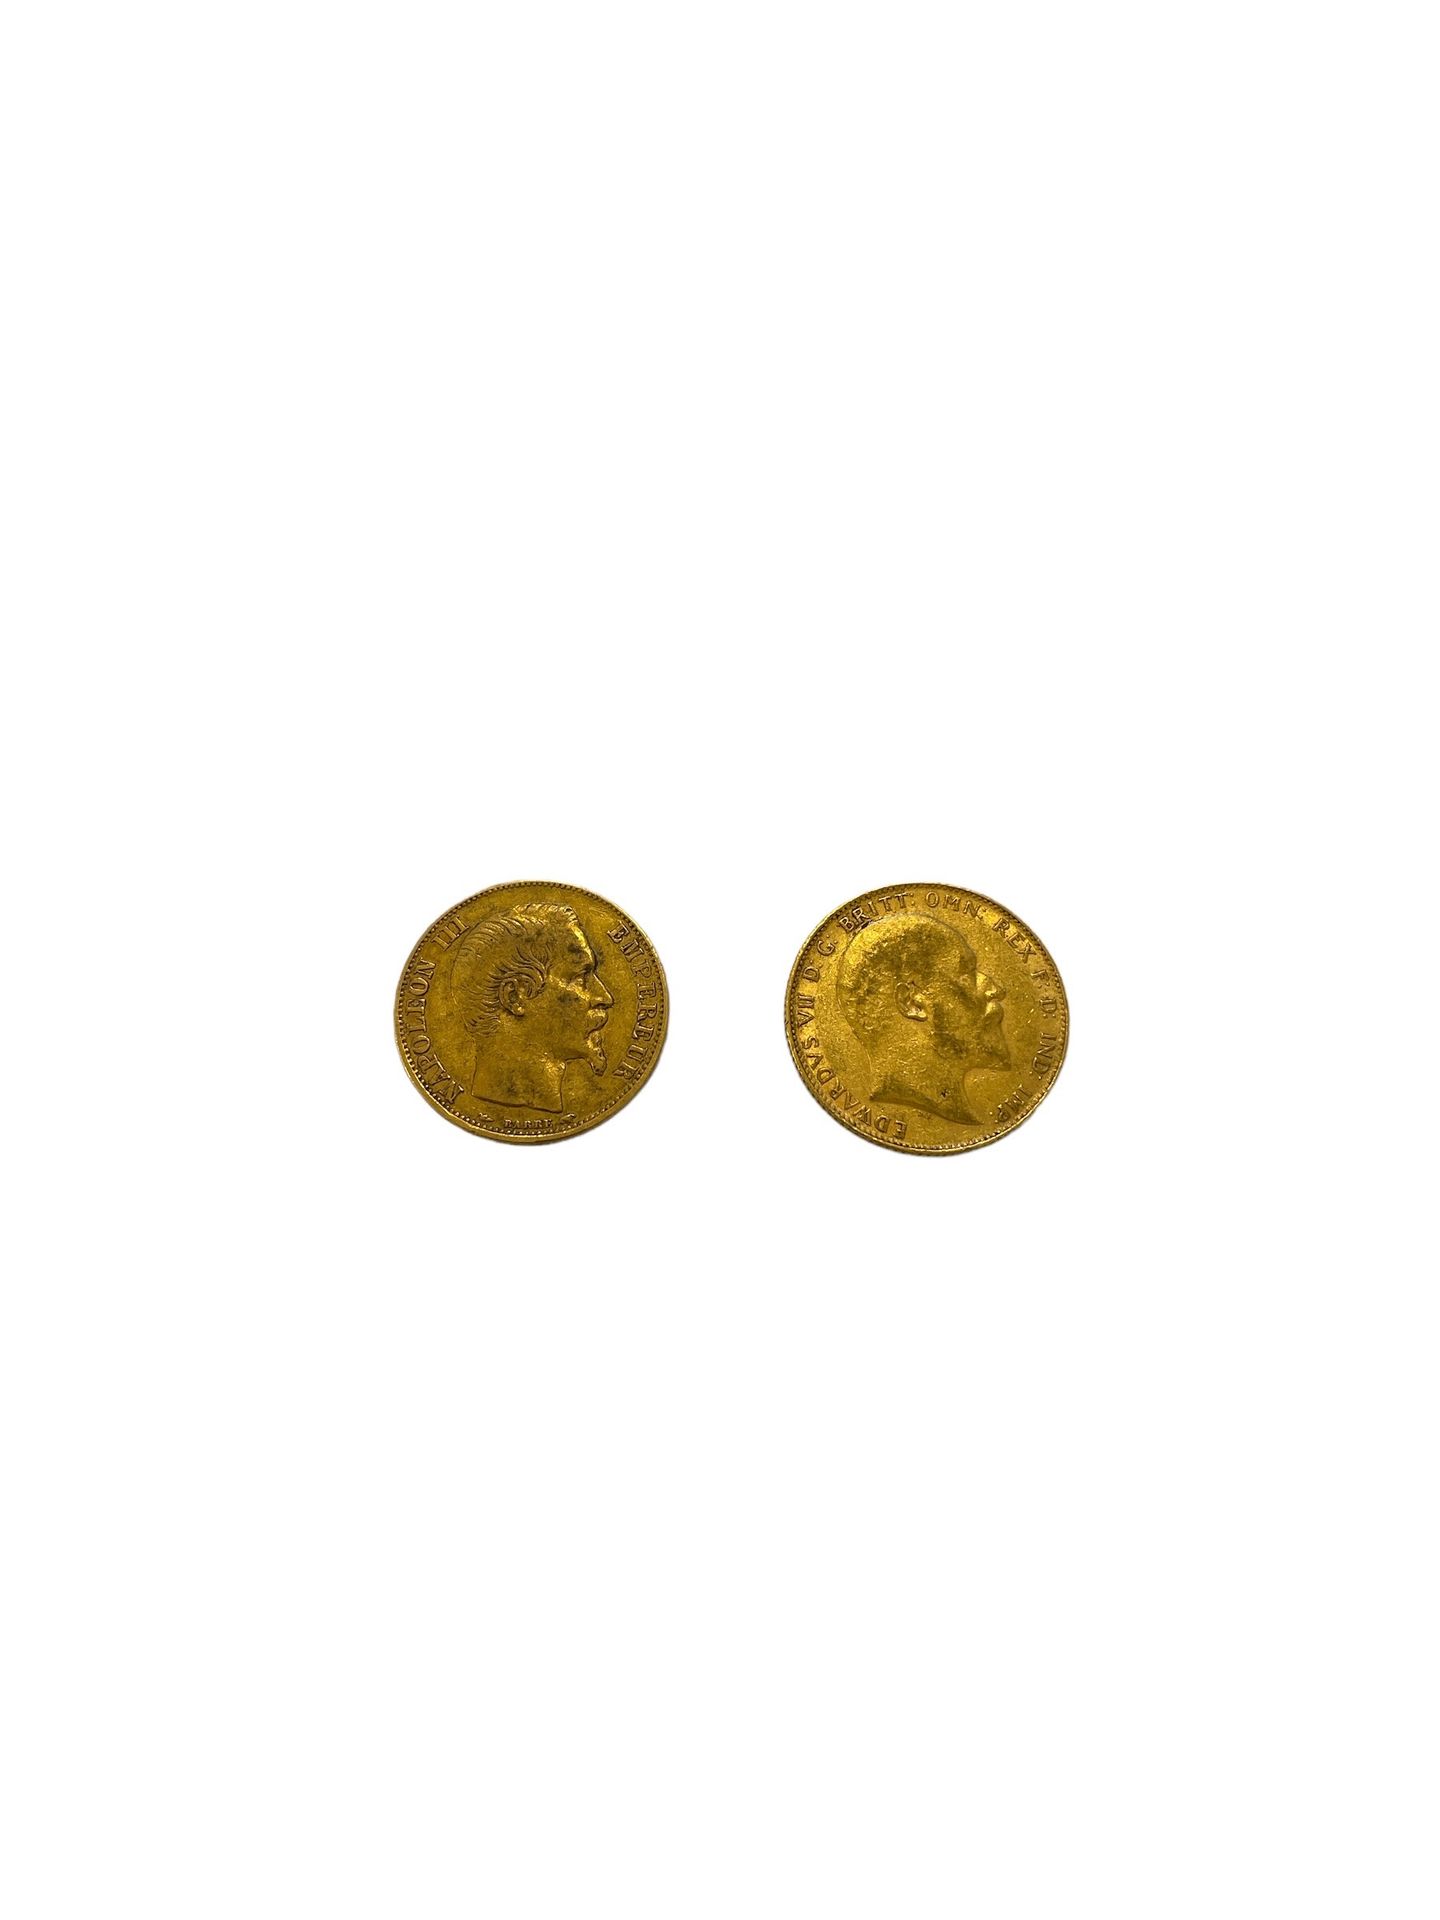 Null 法国-意大利
- 1枚20法郎金币
- 1位君主爱德华七世
重量：14.3克